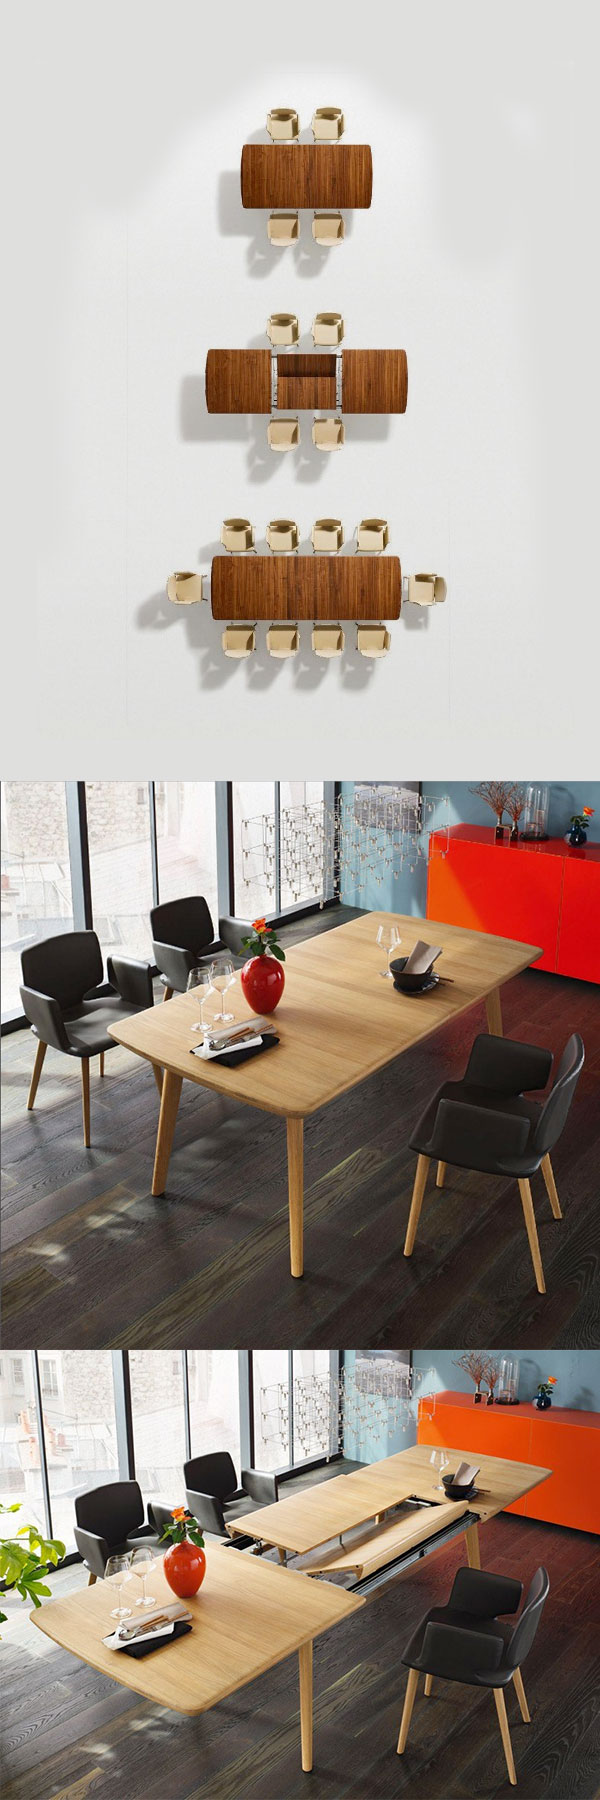 mobili-salvaspazio-tavolo-soluzione-design